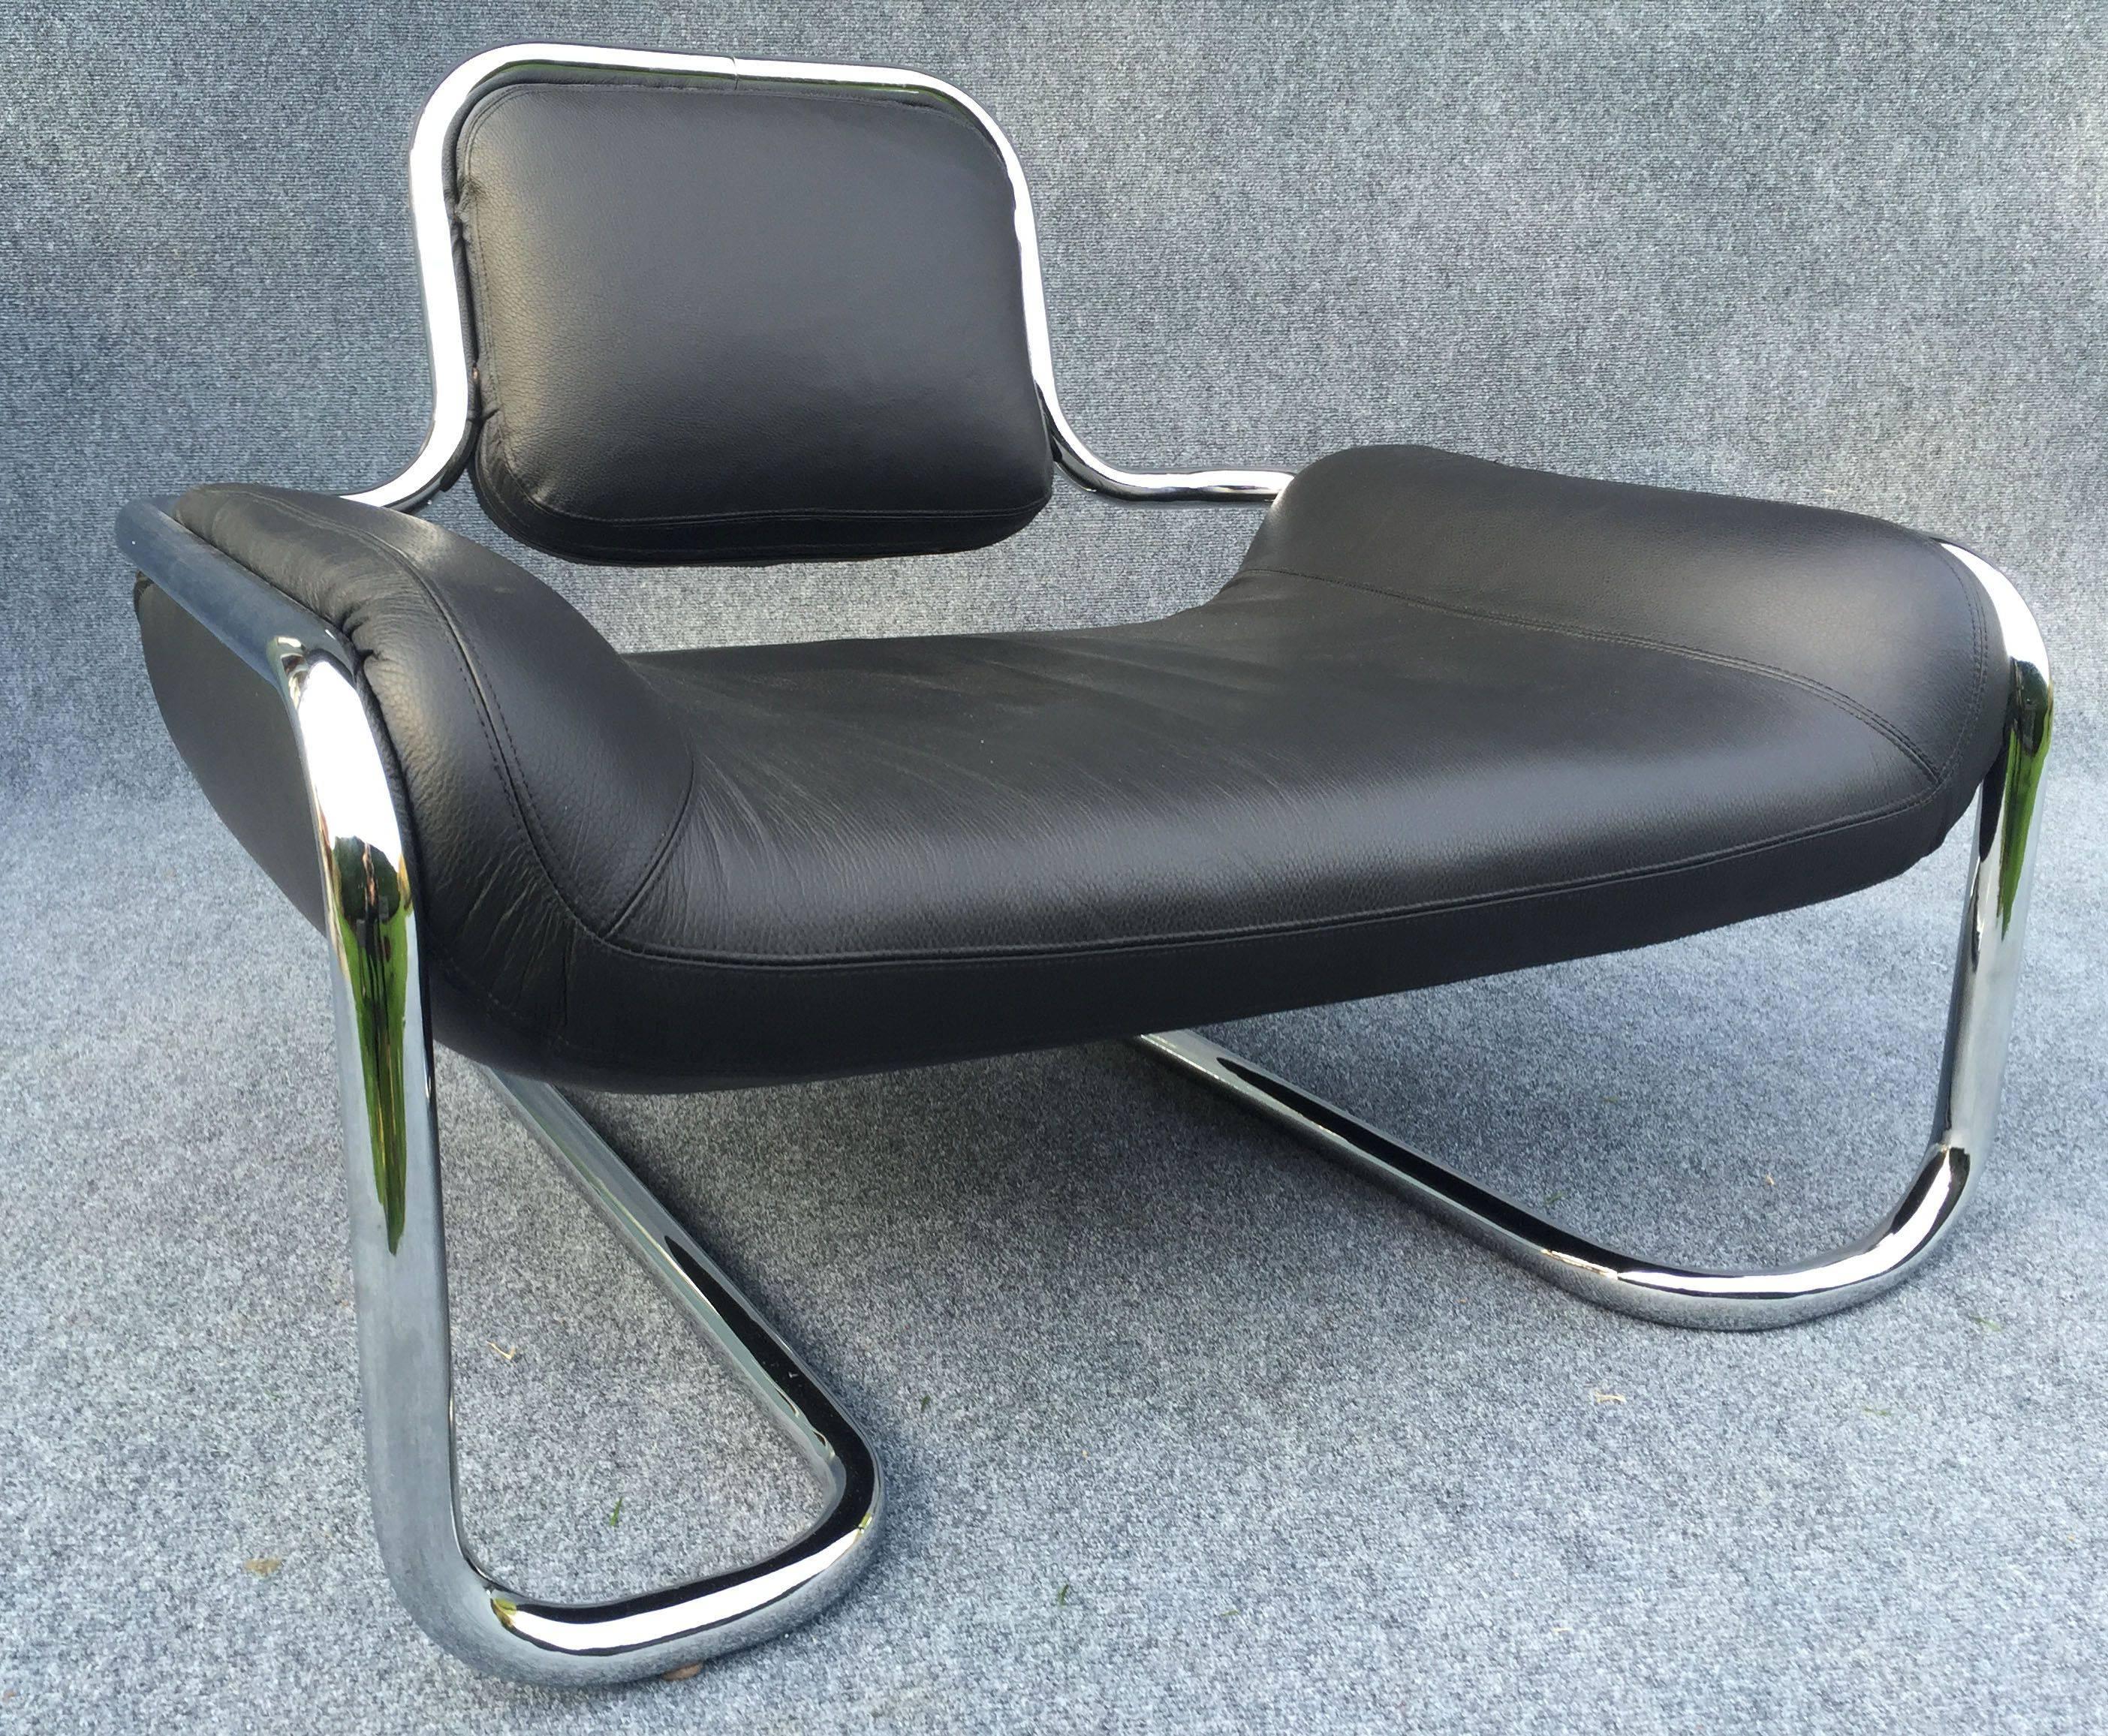 Cette paire de chaises basses rares et cool en cuir noir et chrome est en superbe état.